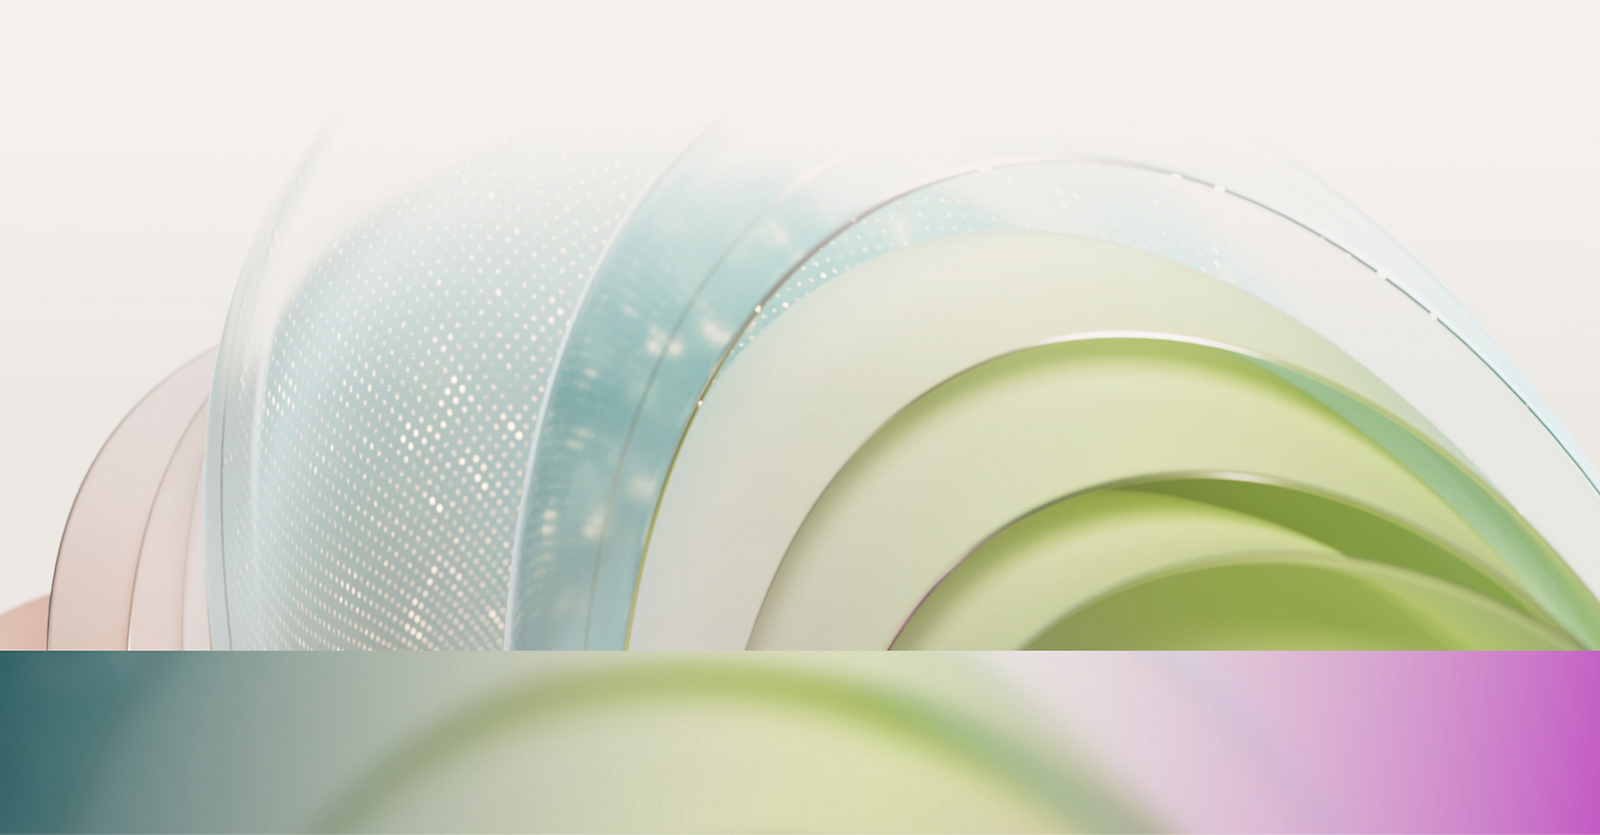 Gráfico abstracto de círculos translúcidos superpuestos en tonos de azul, verde y rosa con un efecto suave y brillante.